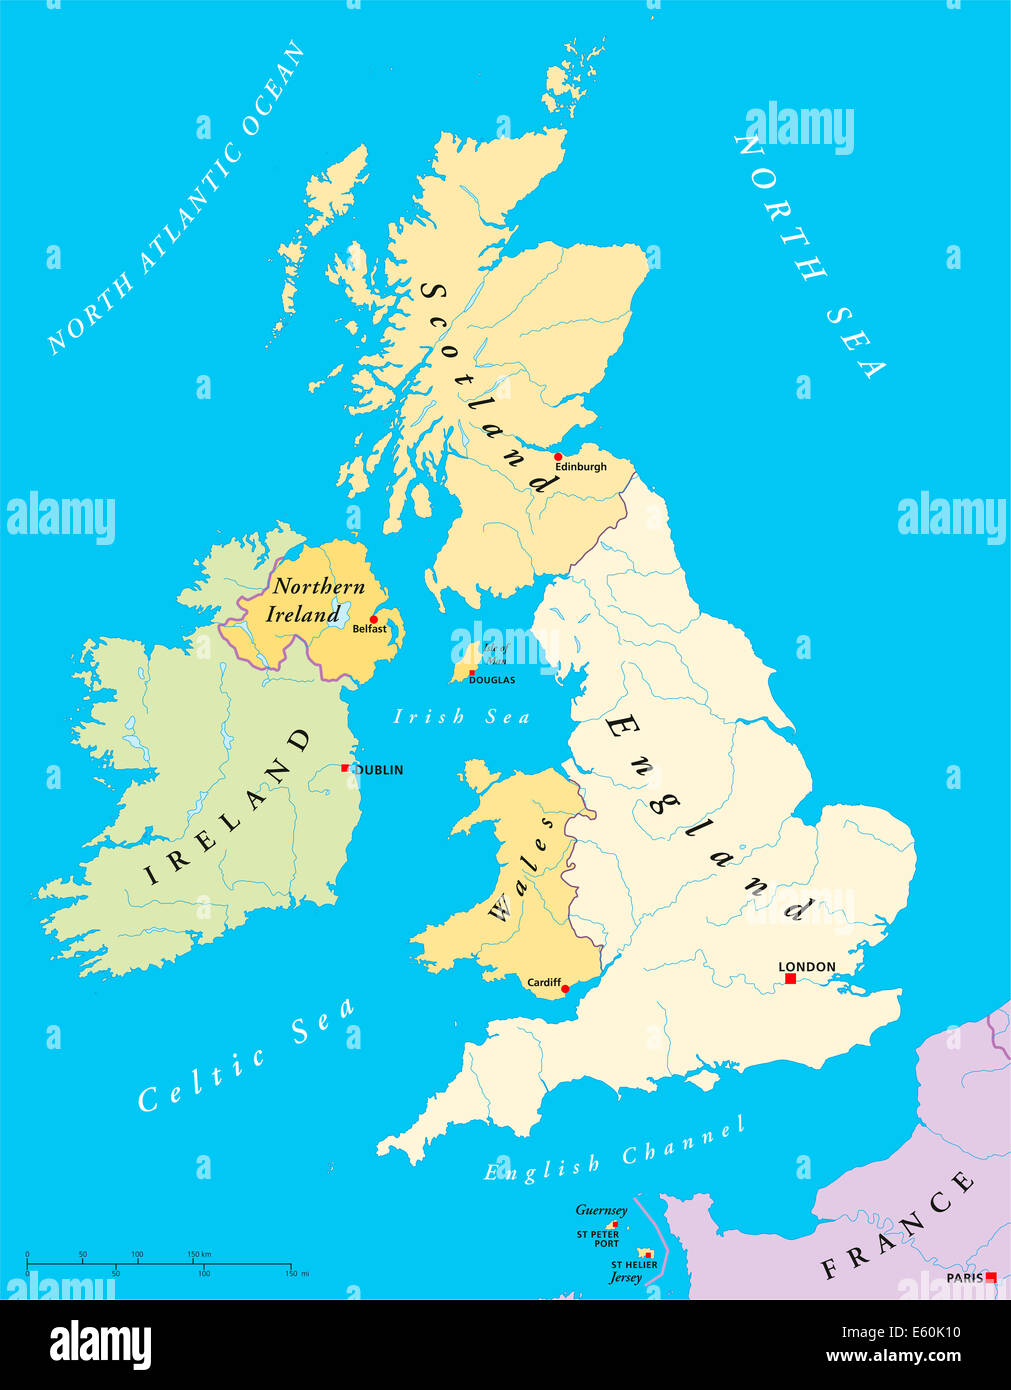 Britischen Inseln Landkarte - Karte der britischen Inseln mit Kapitellen, Ländergrenzen, Flüssen und Seen. Abbildung mit englischer Beschriftung. Stockfoto